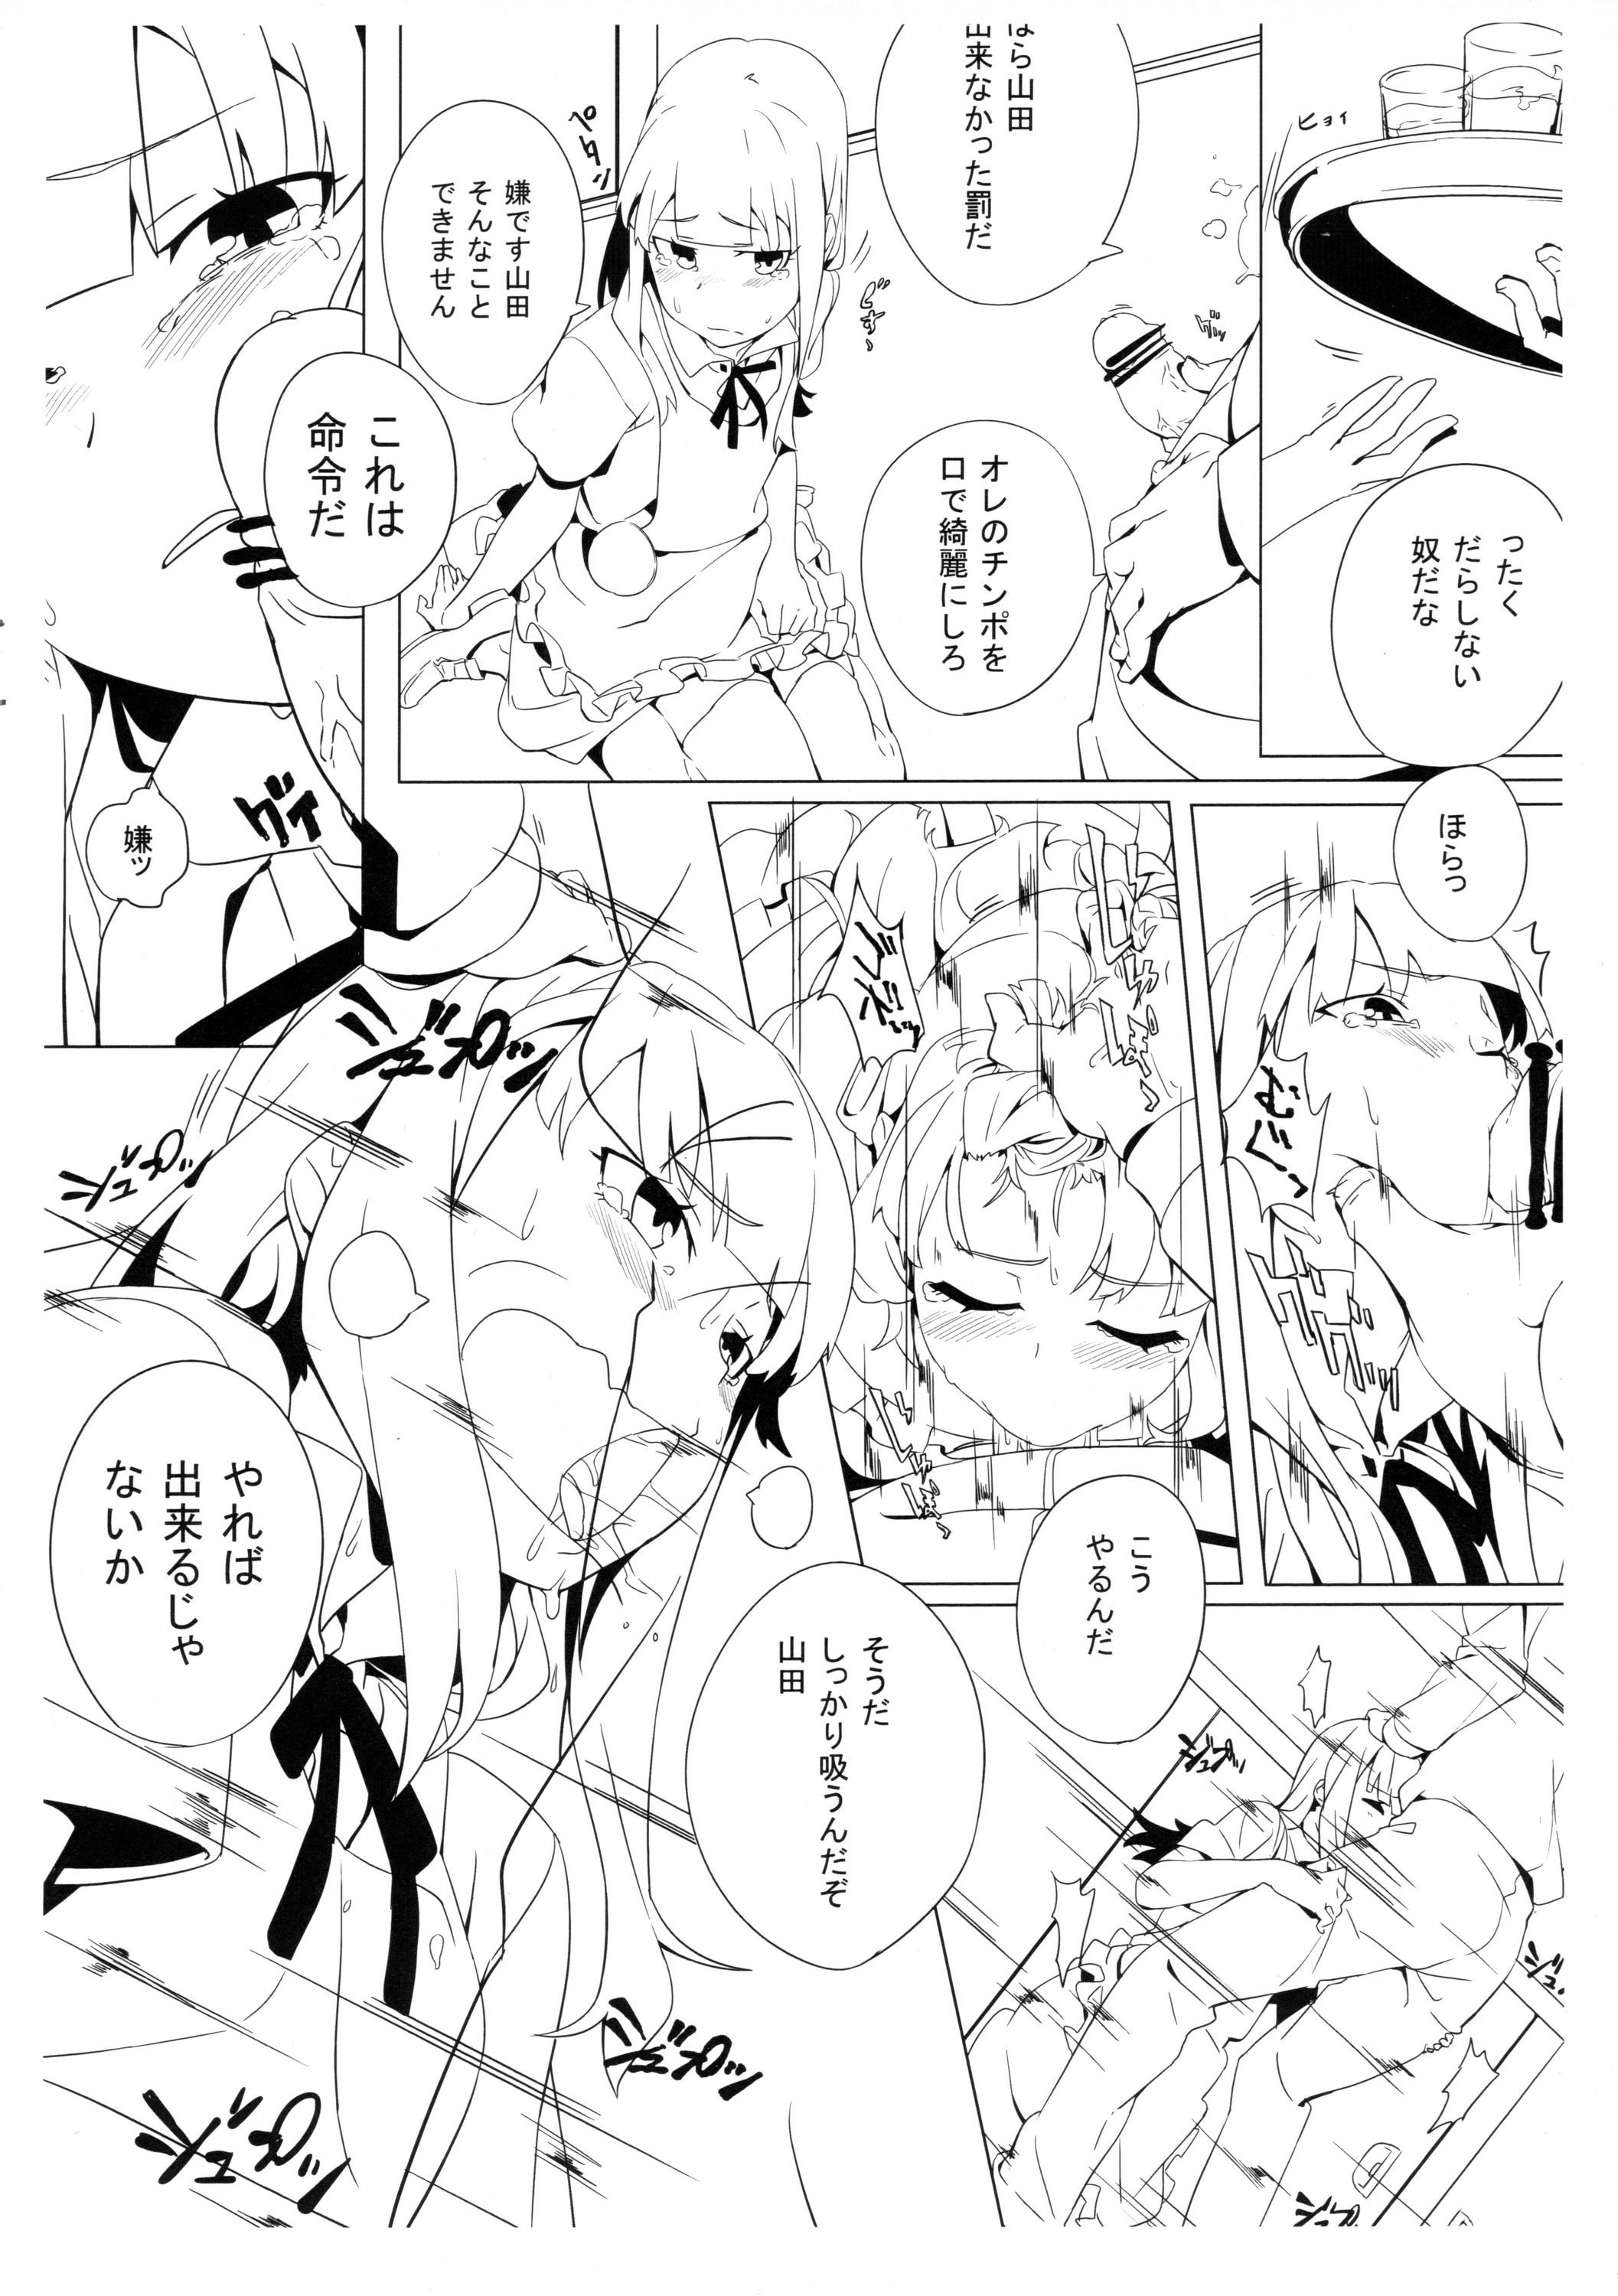 Petite Shinya Working!! Tsuika Order - Working Punished - Page 8